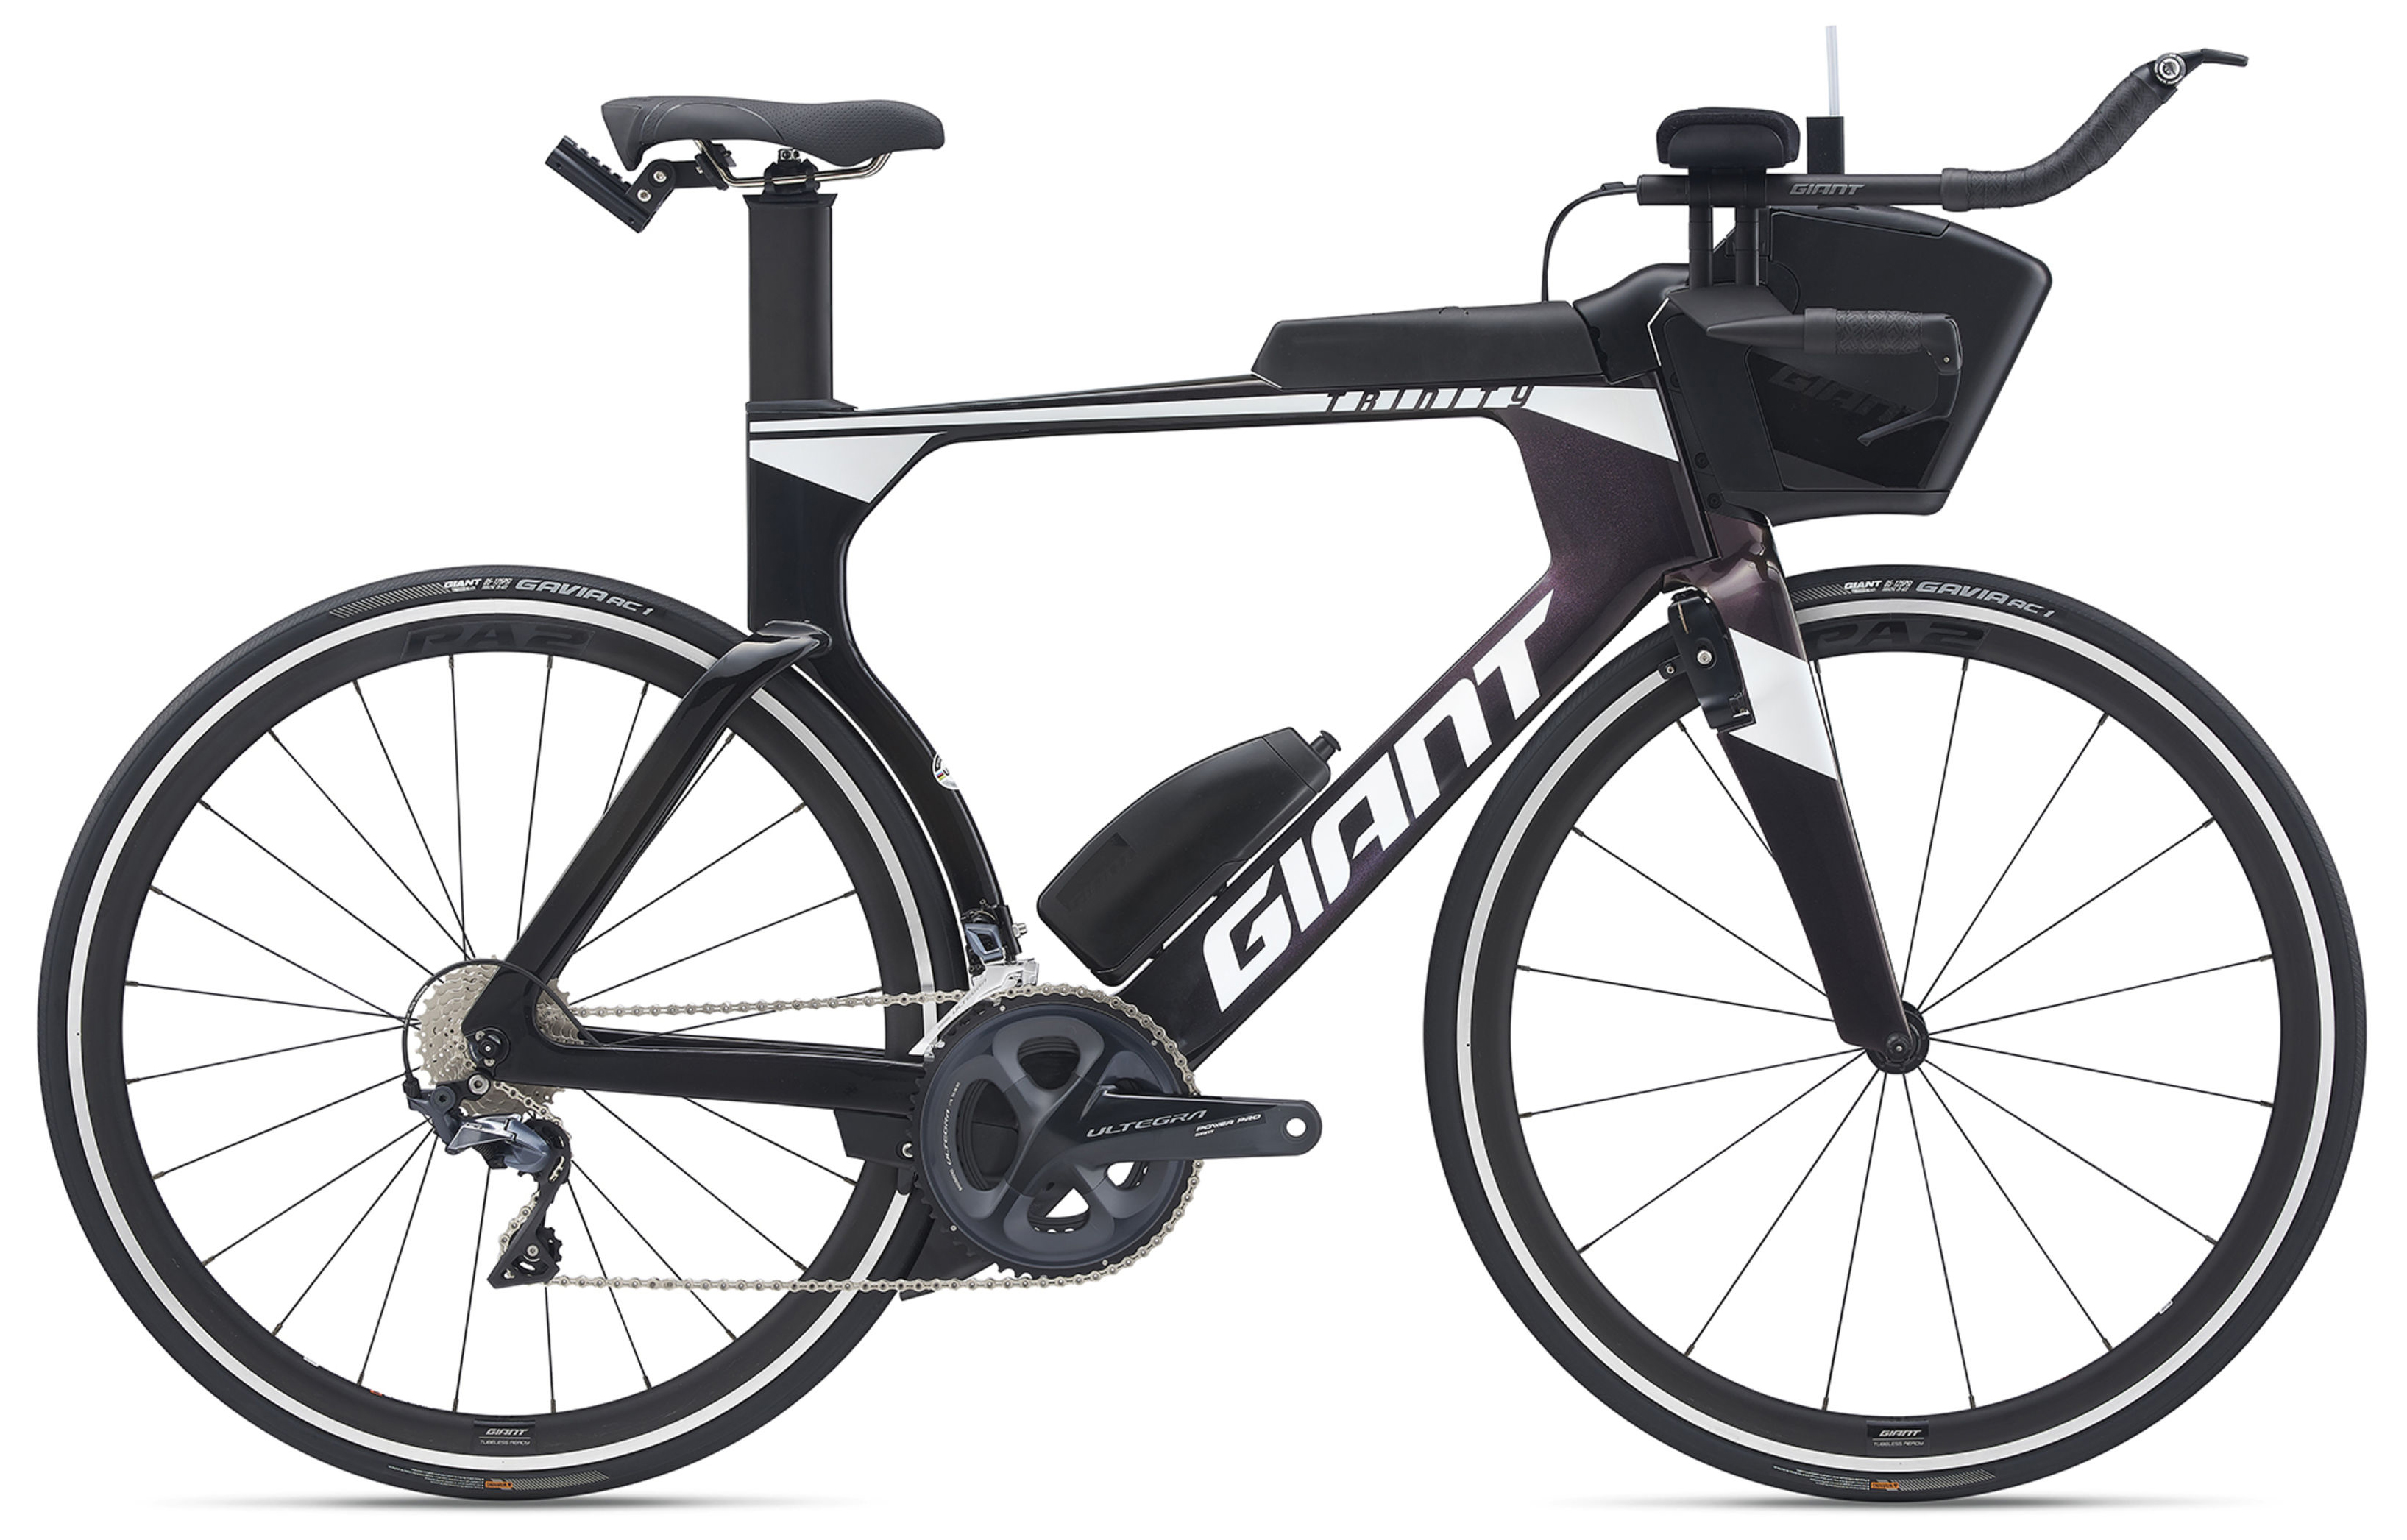  Отзывы о Шоссейном велосипеде Giant Trinity Advanced Pro 2 (2021) 2021